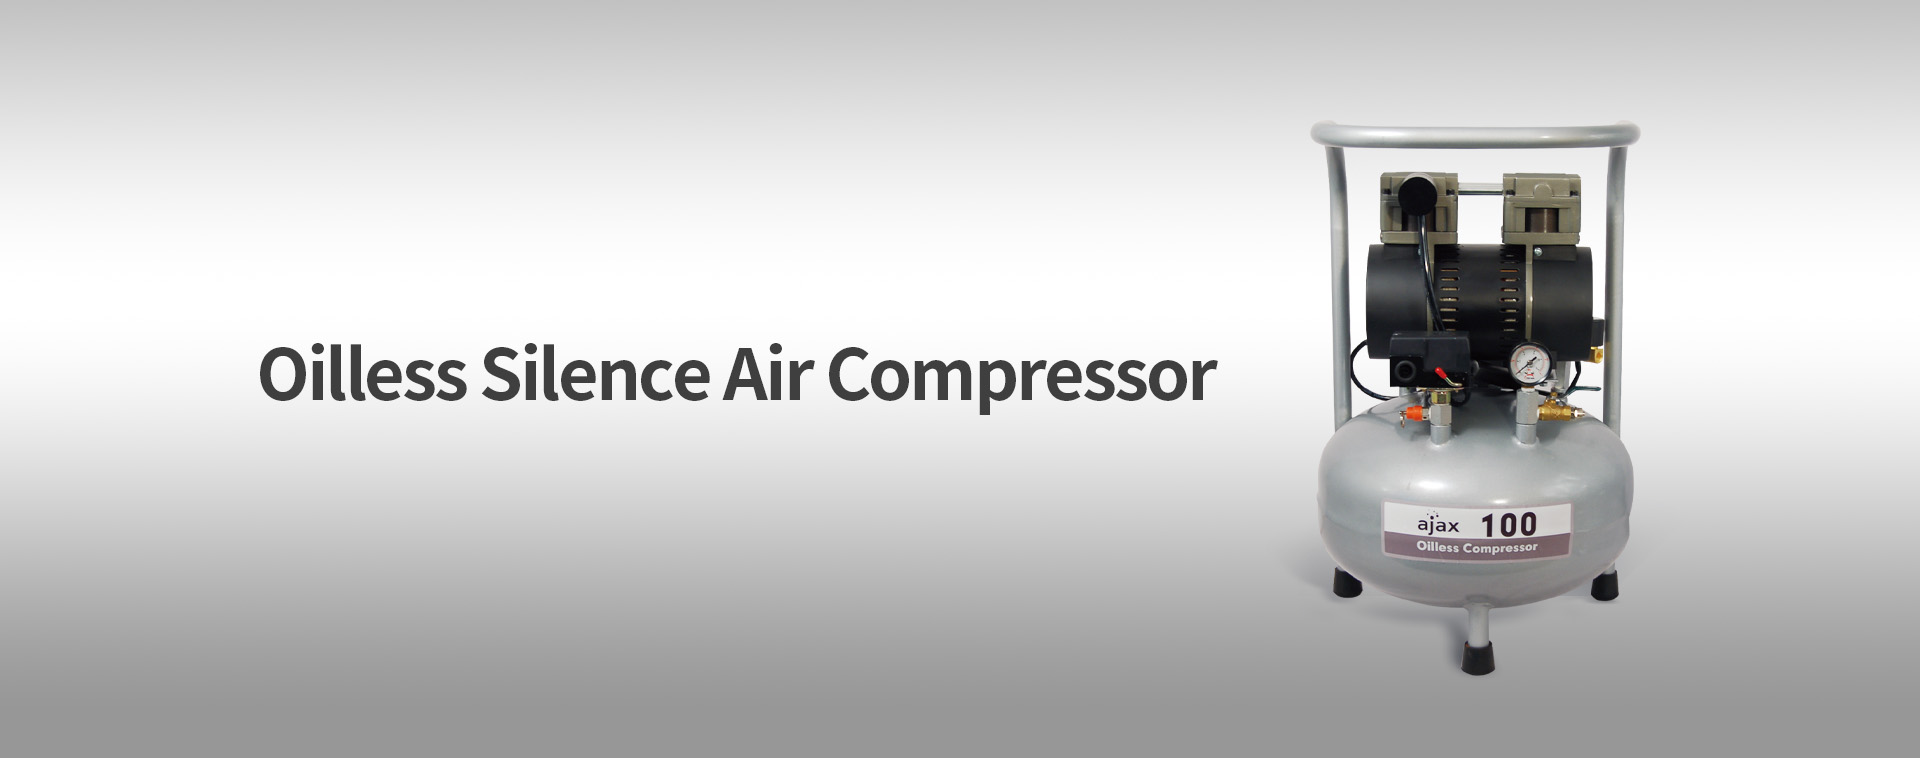 Compresor de aire Ajax 100